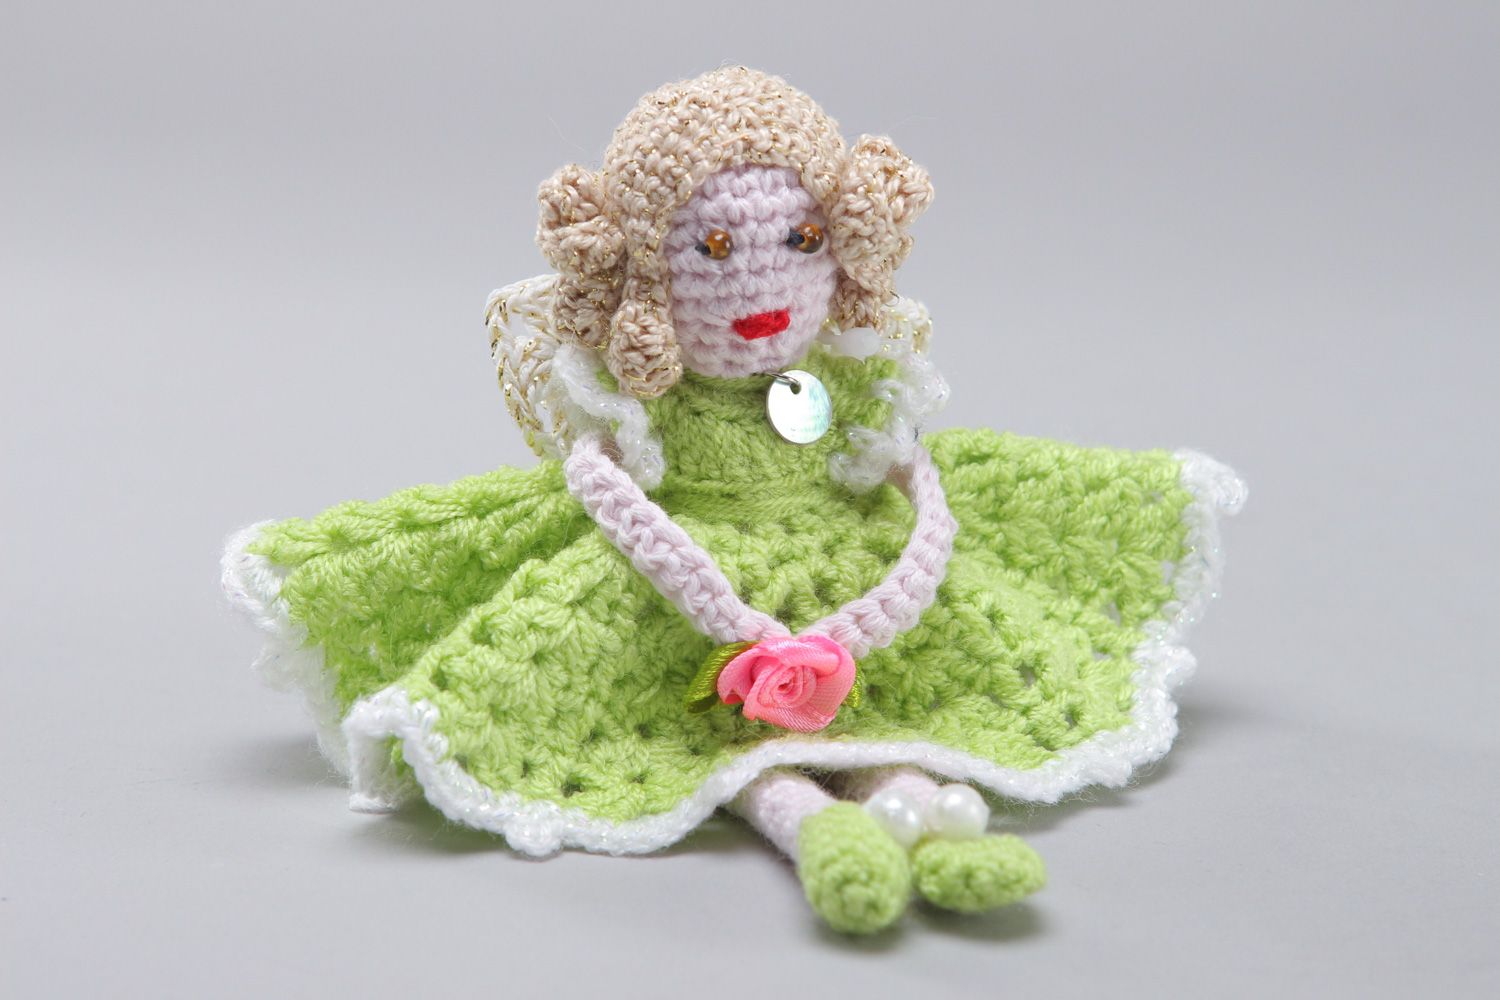 Кукла ручной работы в салатовом платье связанная крючком из хлопка и акрила  фото 1